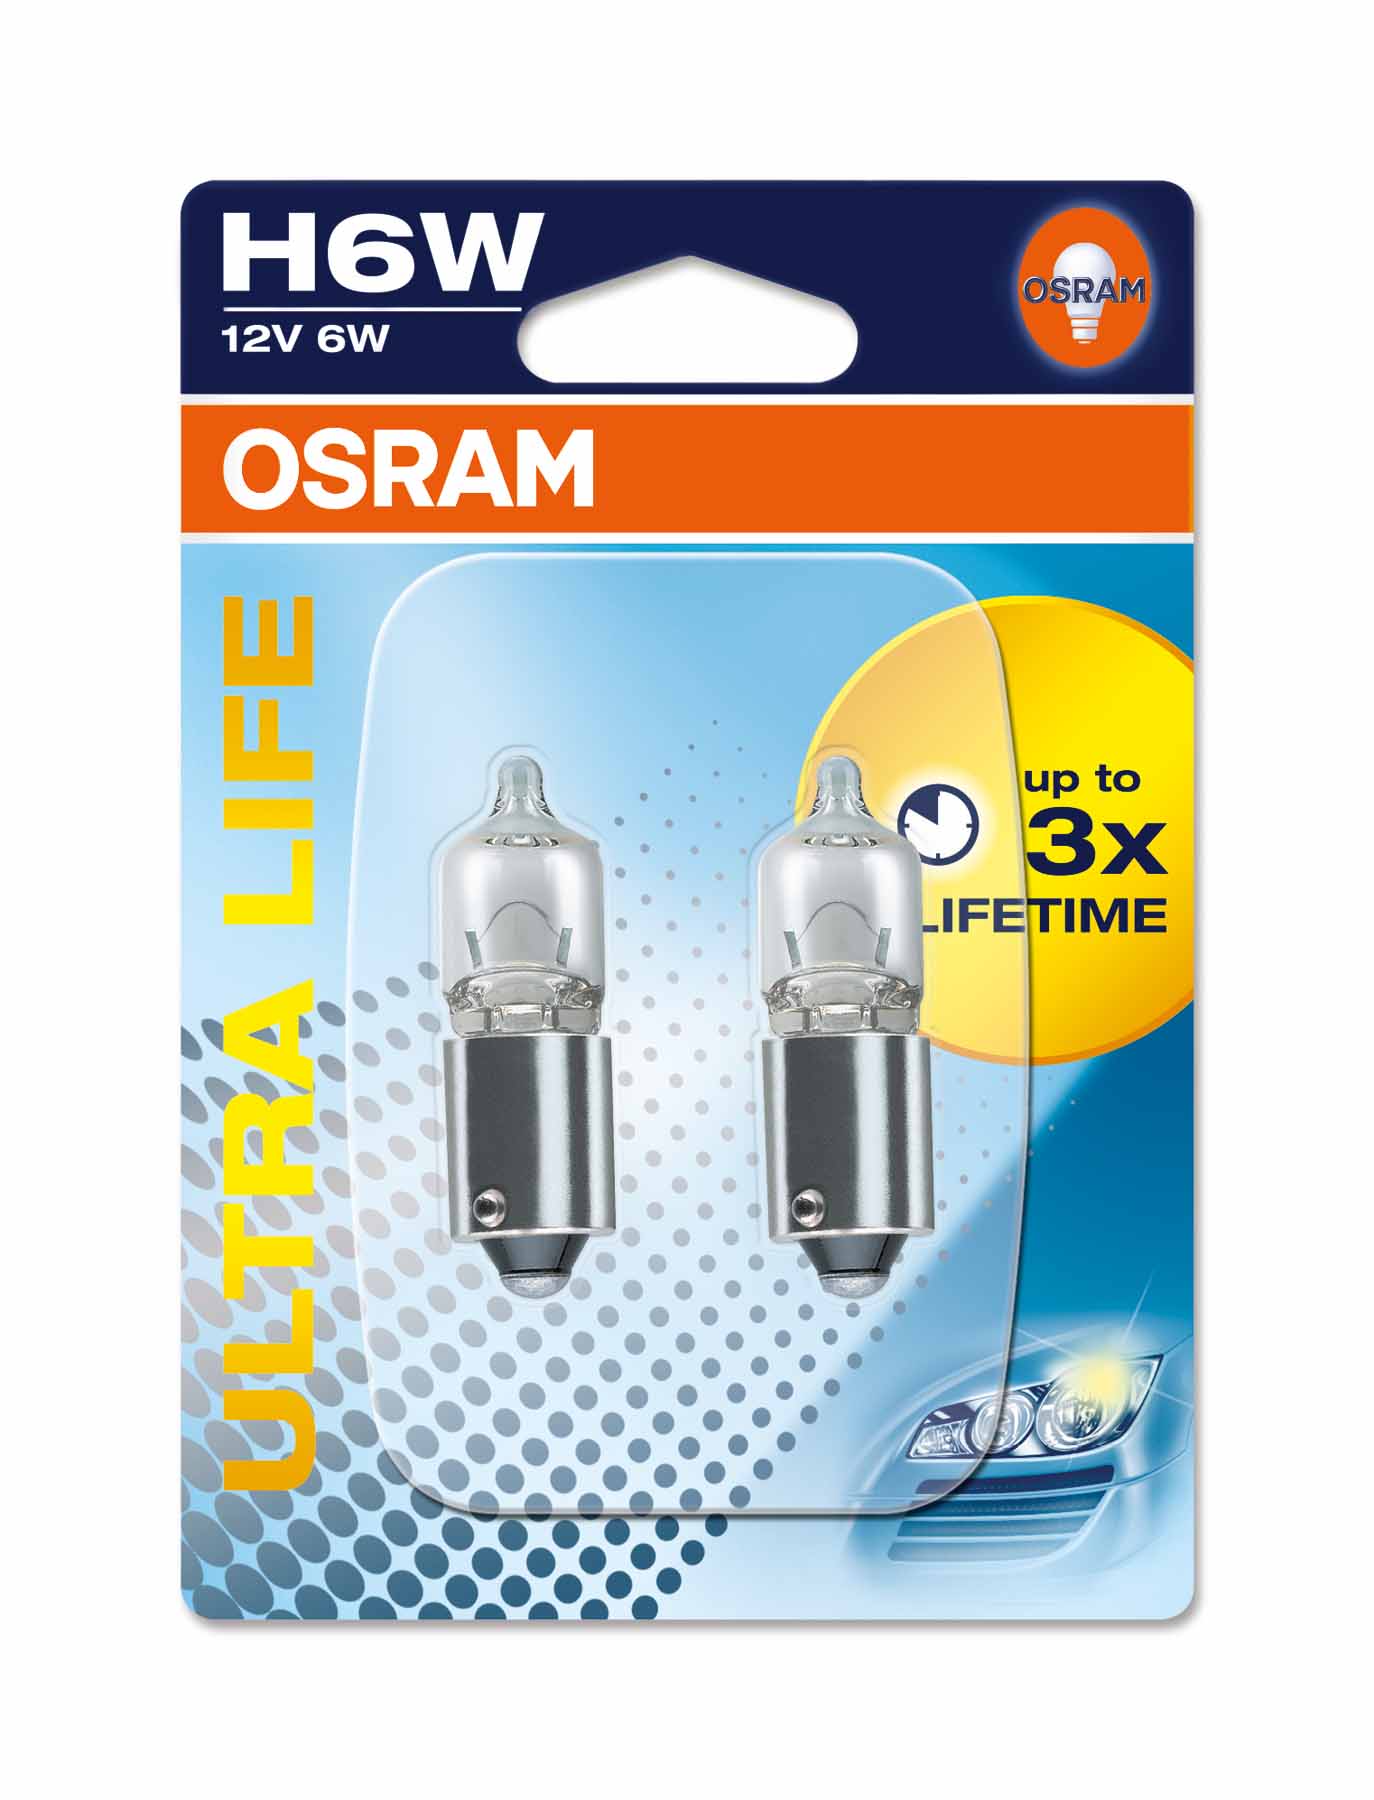 Pære H6W Ultra Life 6 W [12 V] (2 stk.), OSRAM, 12 V